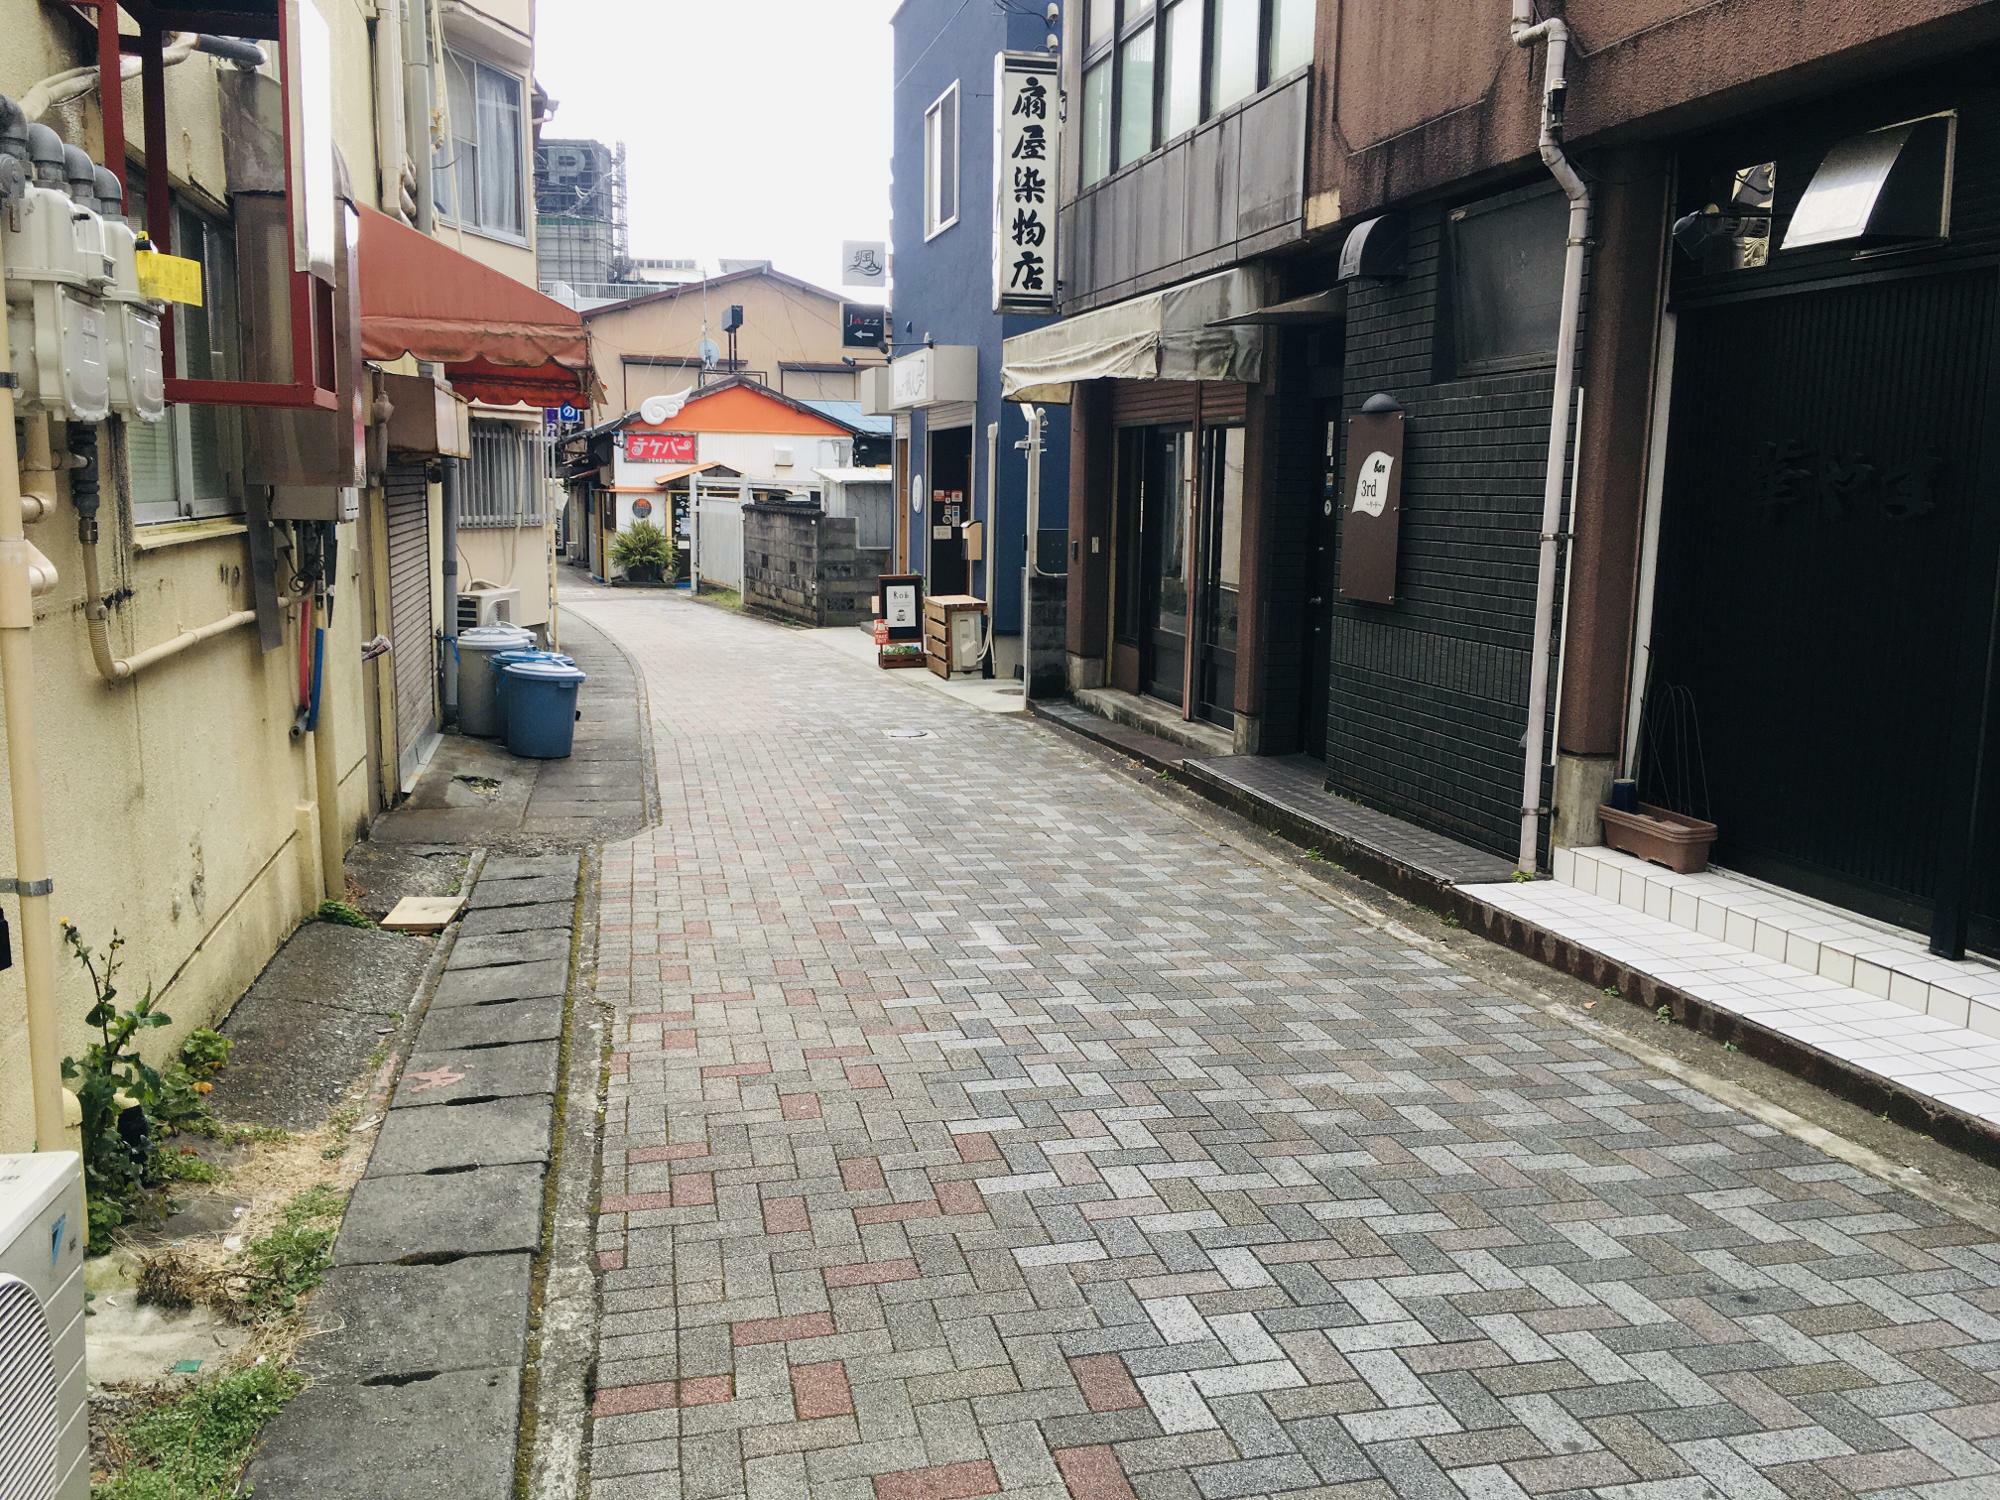 鎌倉古道からcafe Rob 三島店へ続く小道の様子